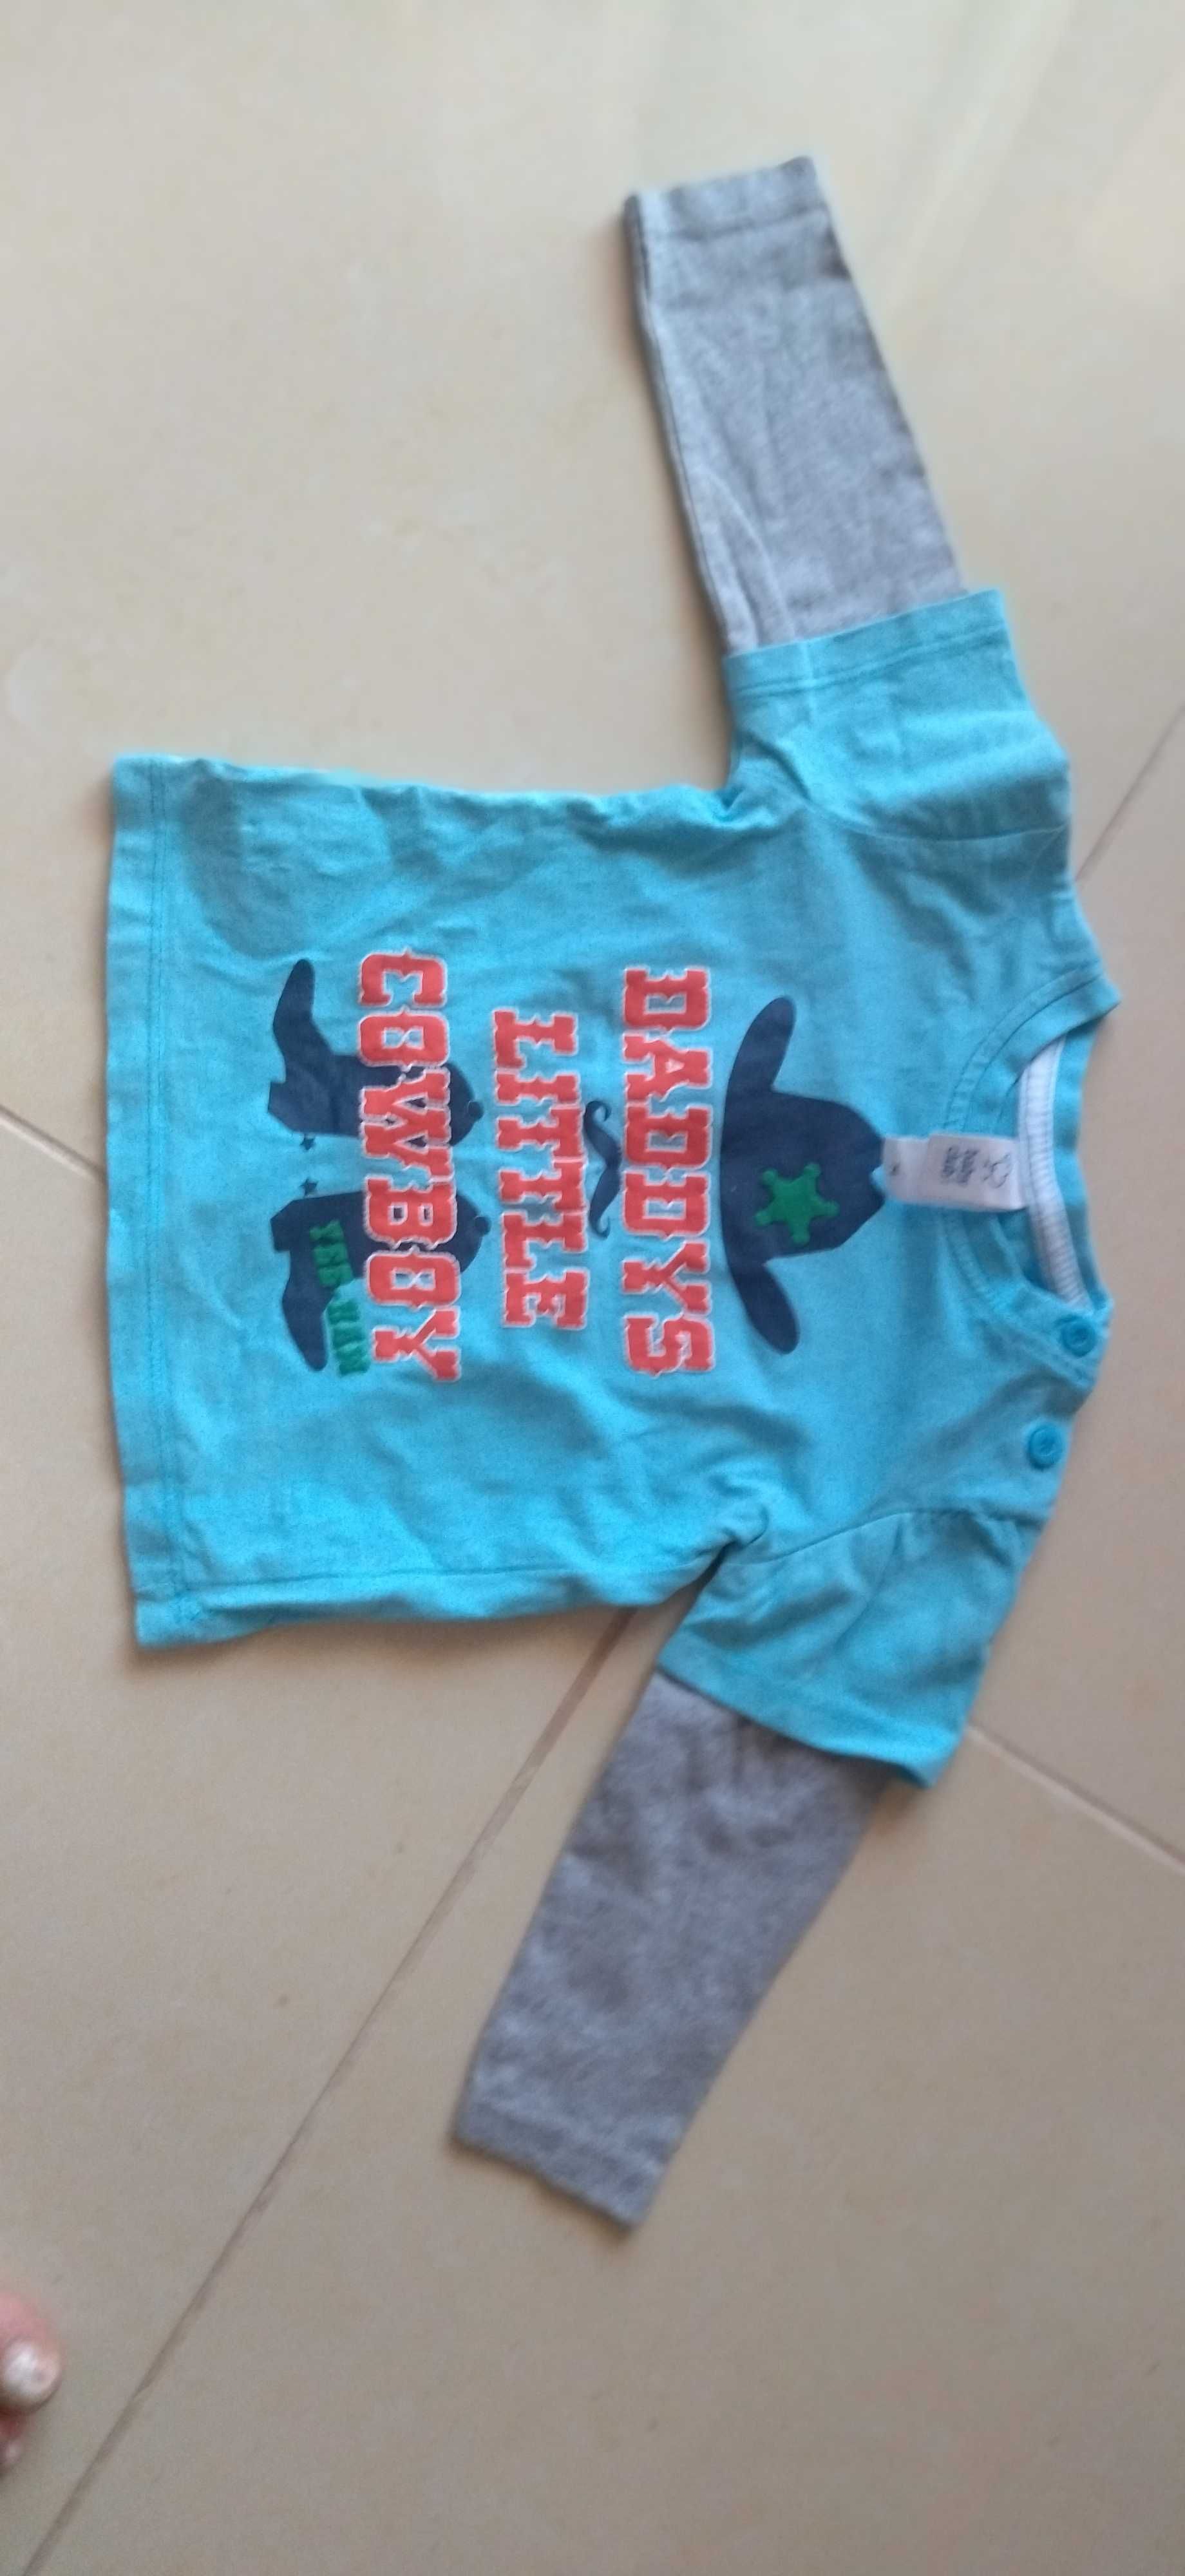 7 Body s de menino tamanho 6 meses + T-Shirt azul- novo preço